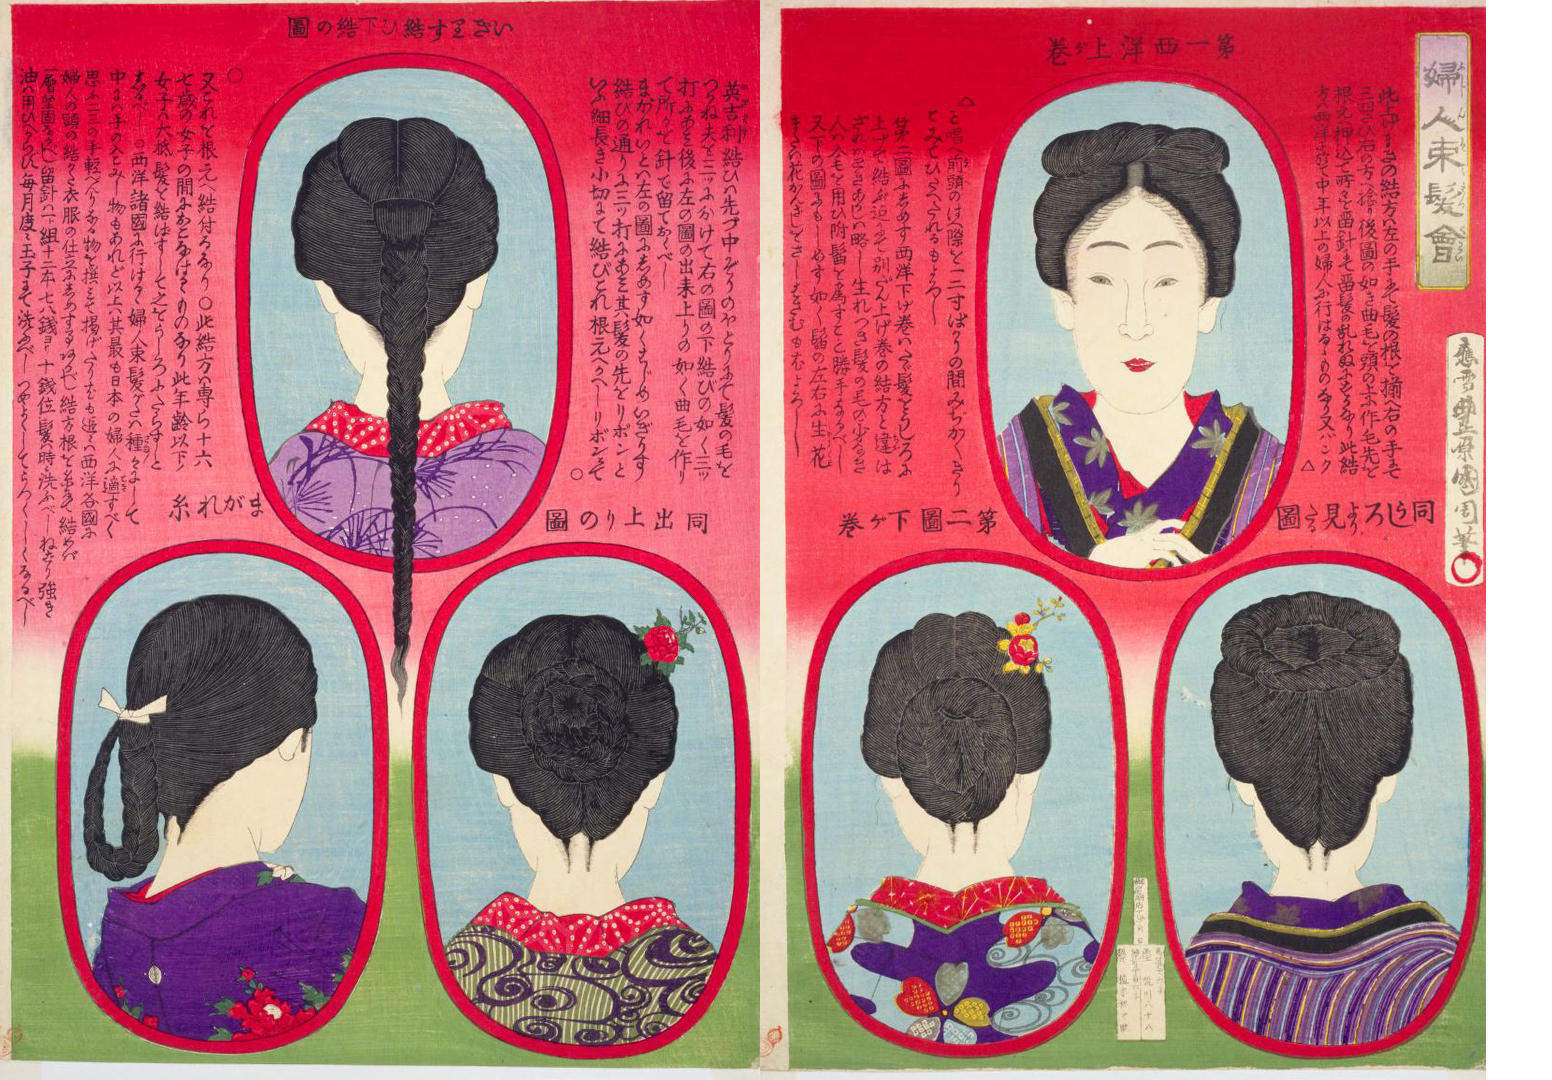 日本髪から洋髪に移行した明治時代のへアルタイル錦絵が興味深い 三つ